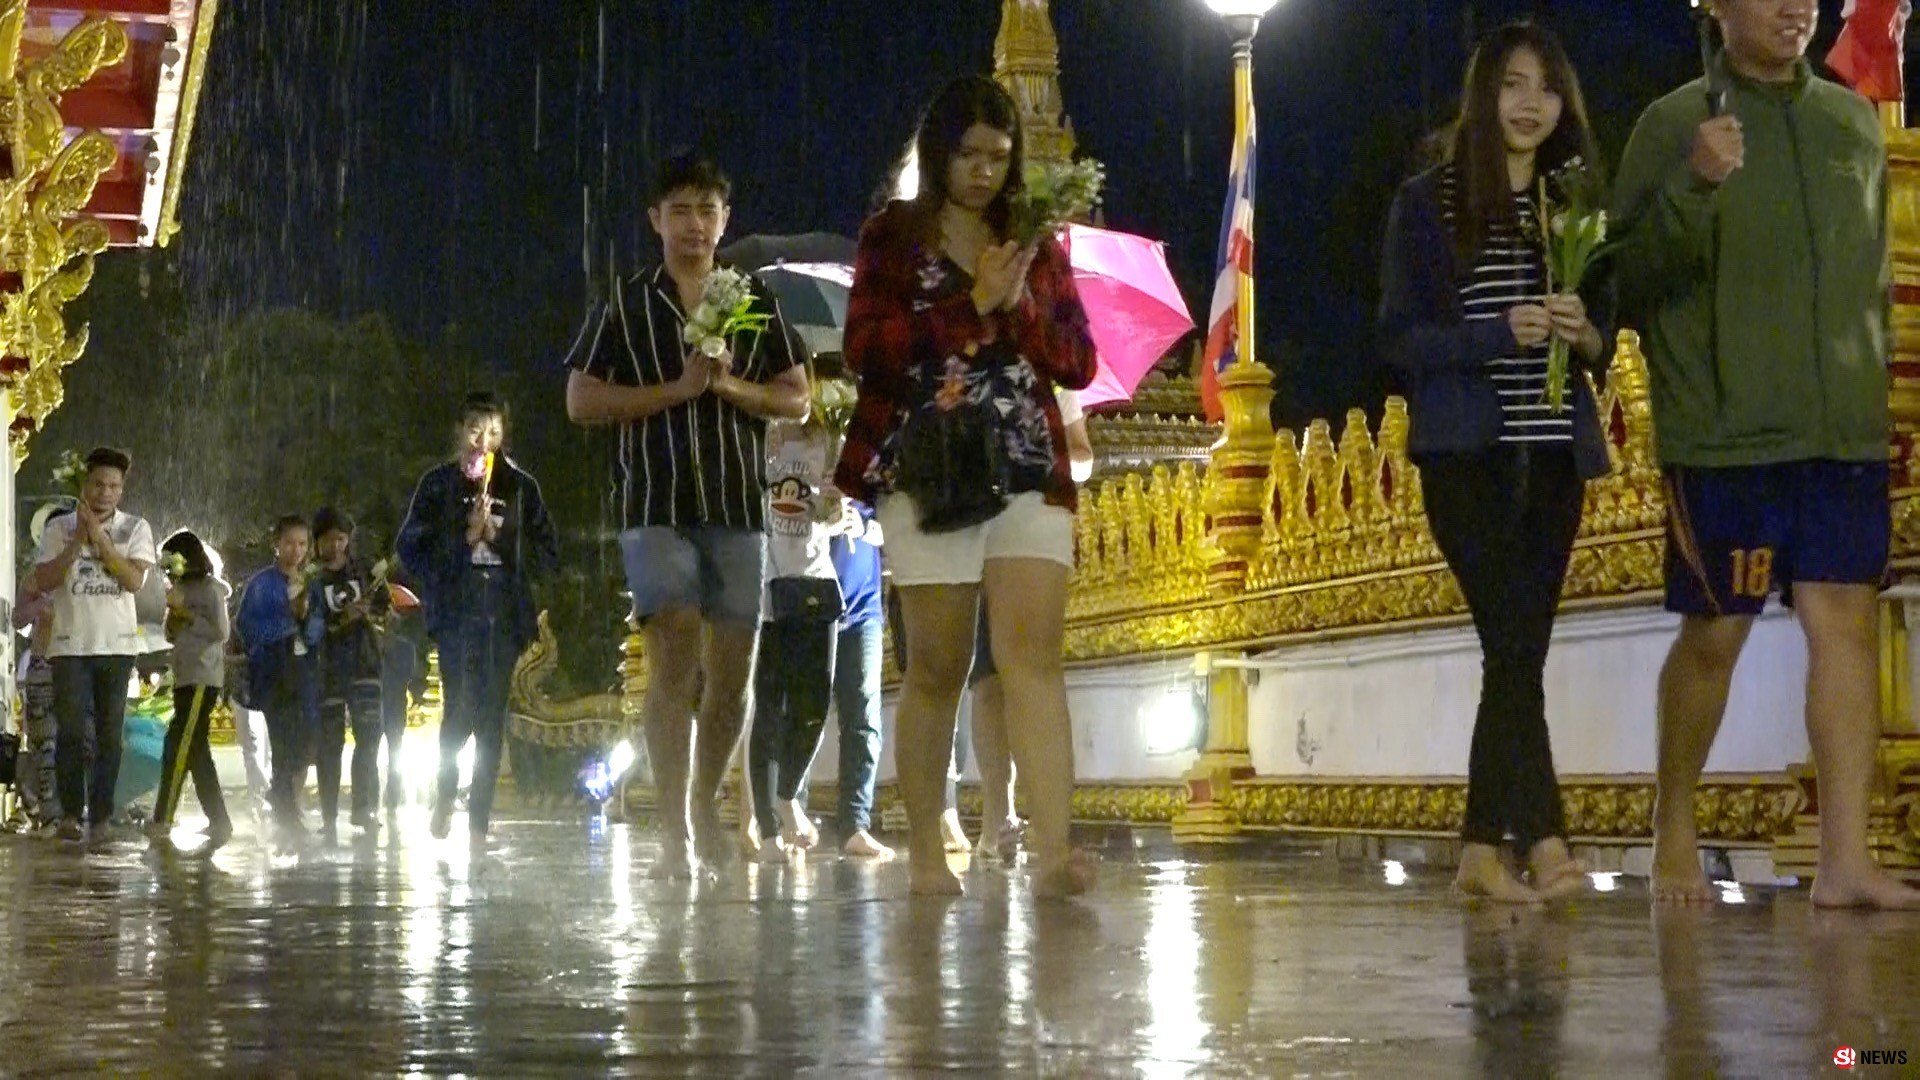 ลุยฝน! พุทธศาสนิกชนร่วมเวียนเทียนวันวิสาขบูชา แม้ฝนจะตกแต่ไม่เป็นอุปสรรค